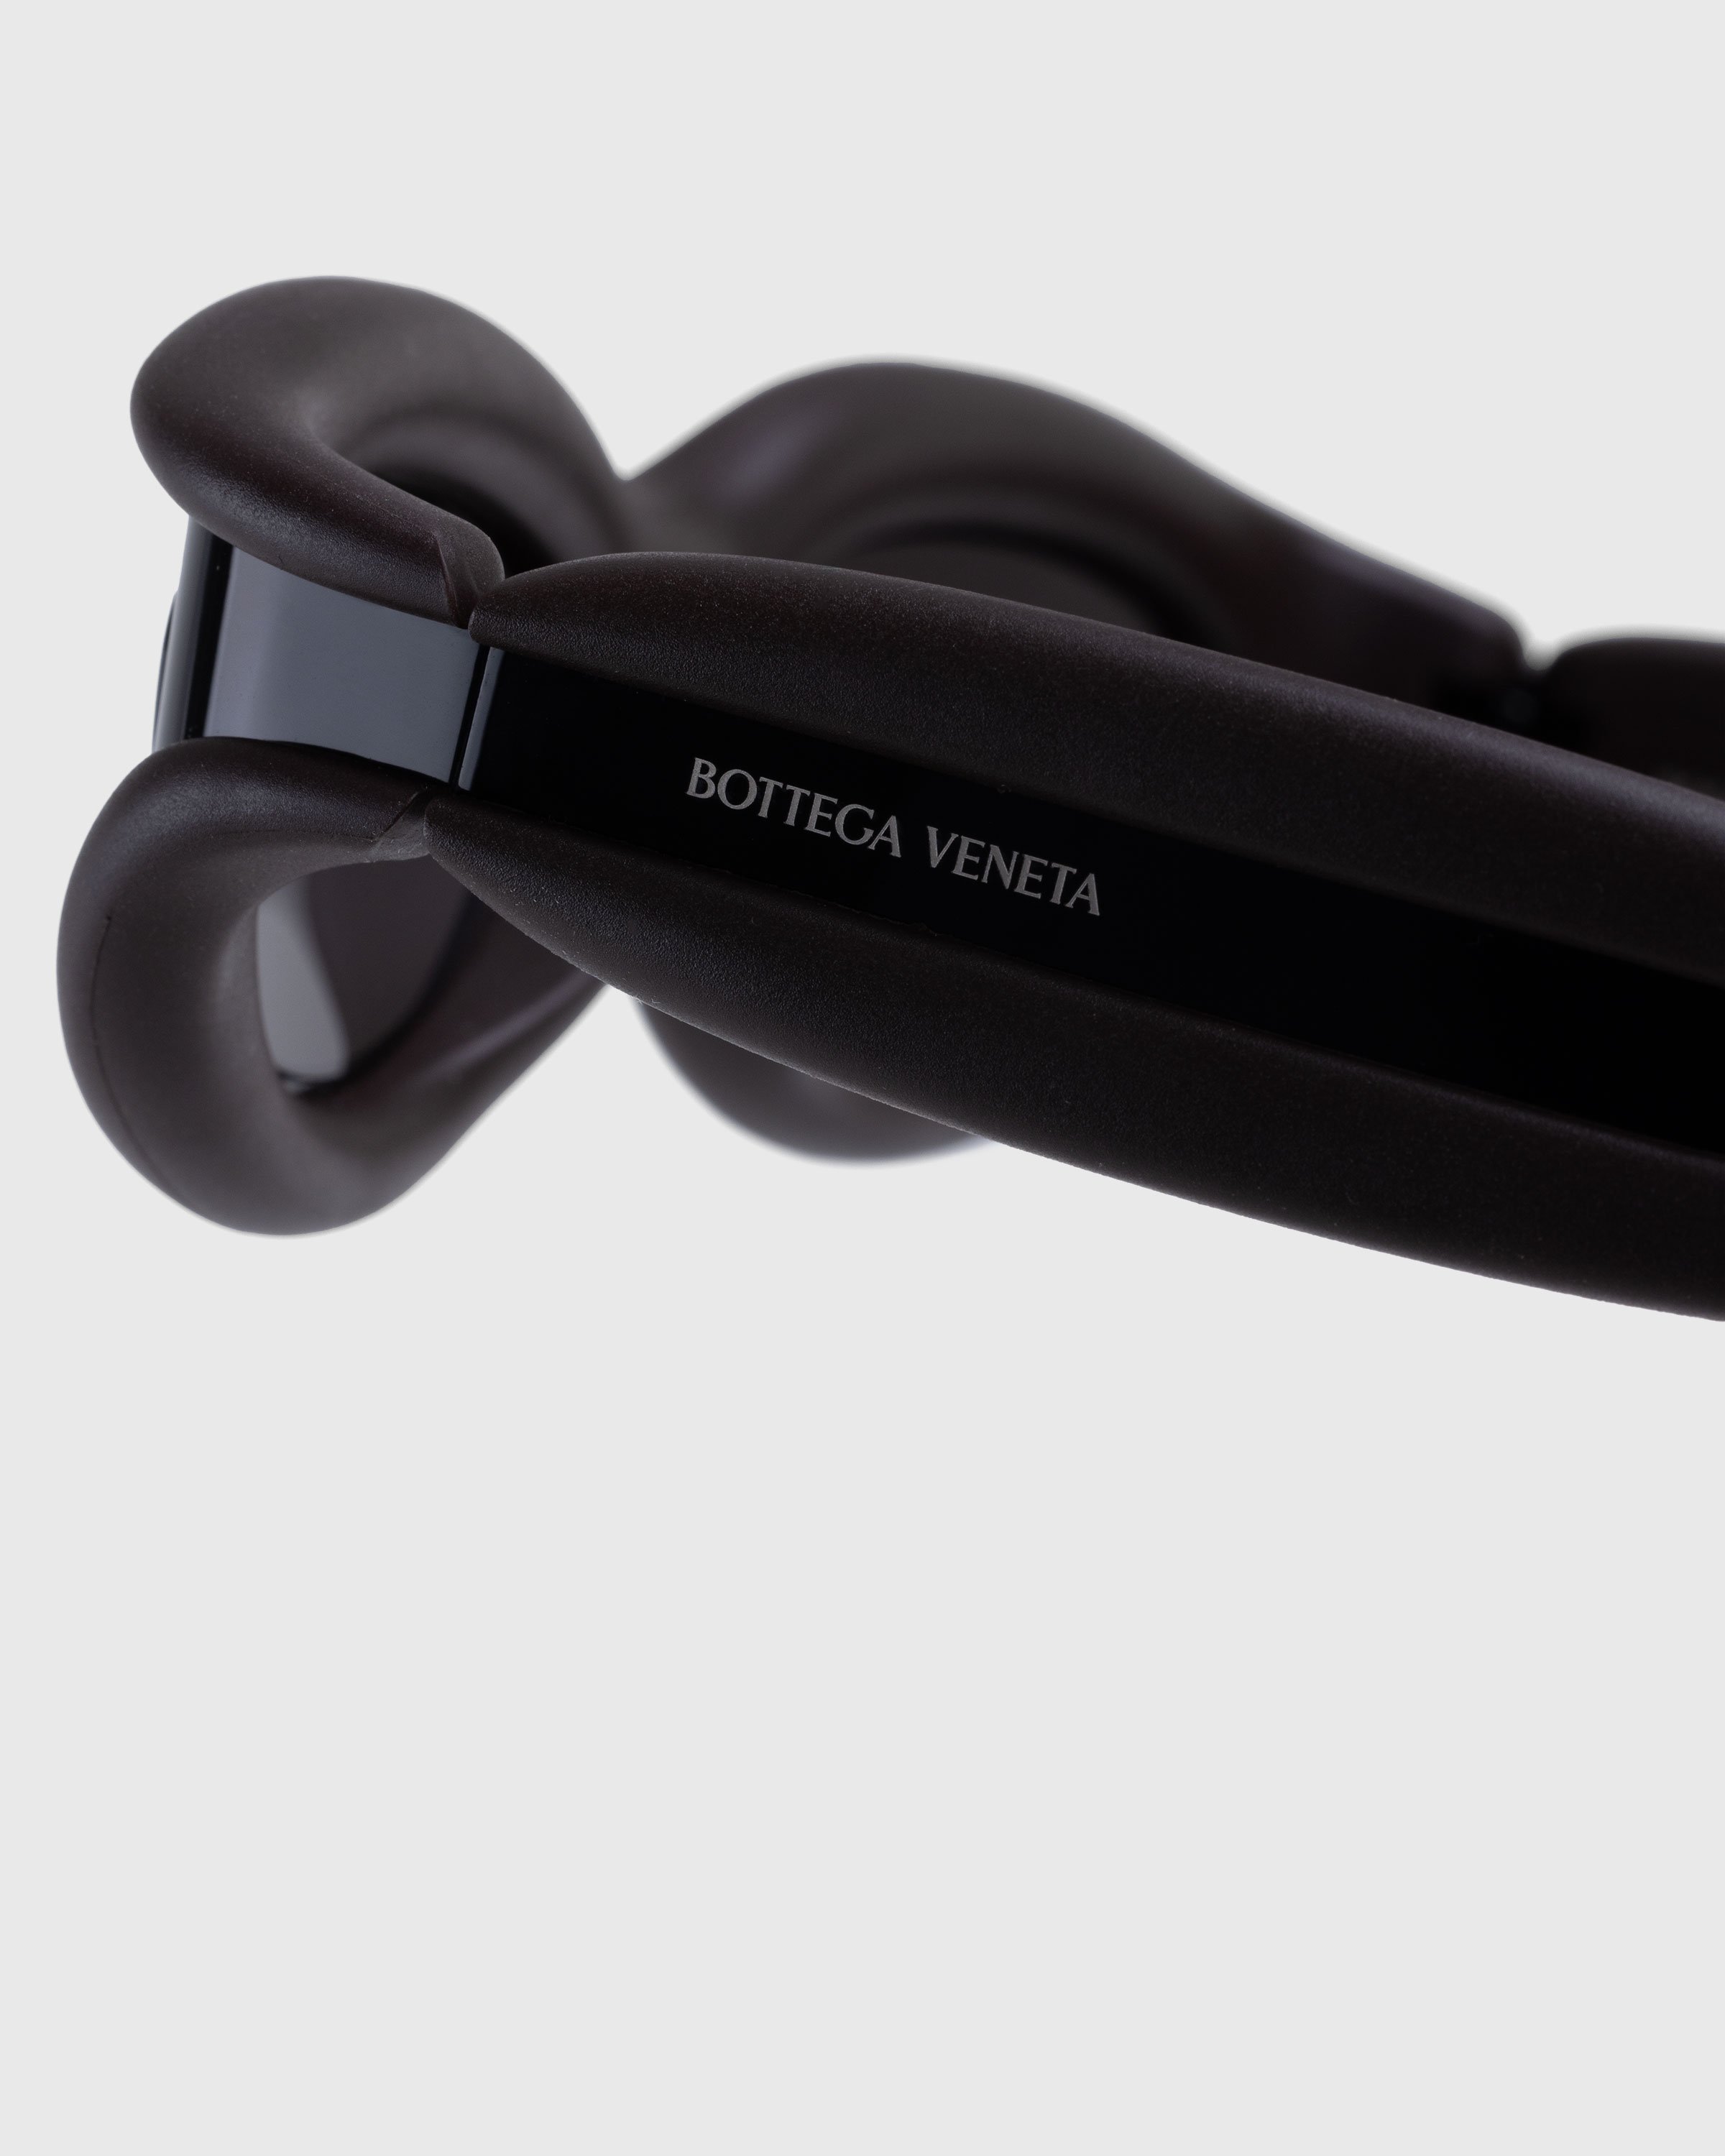 Bottega Veneta - Unapologetic Sunglasses Black - Accessories - Black - Image 3